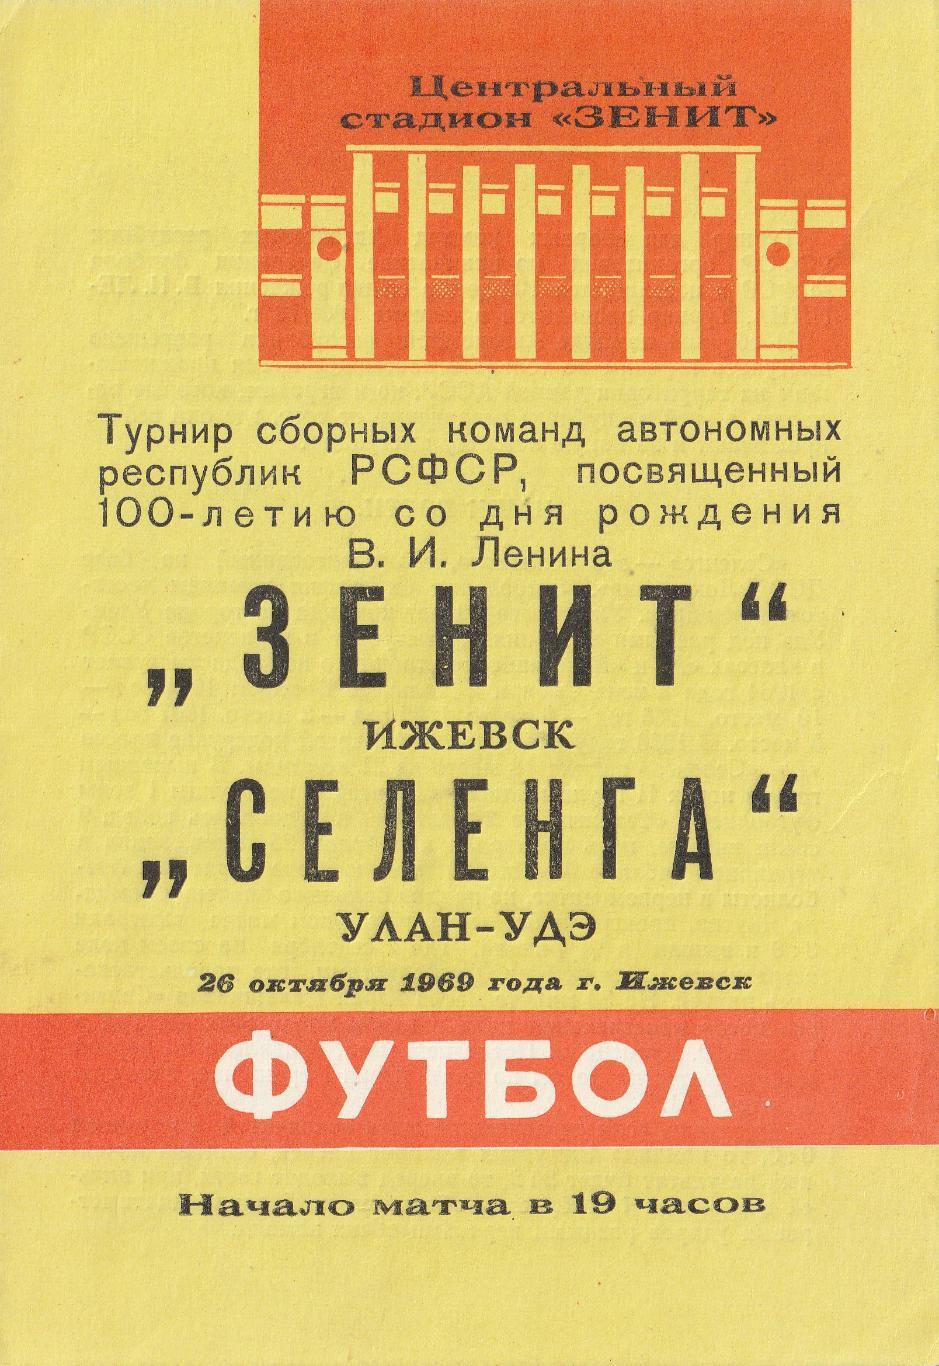 Зенит Ижевск - Селенга Улан-Удэ 26.10.1969